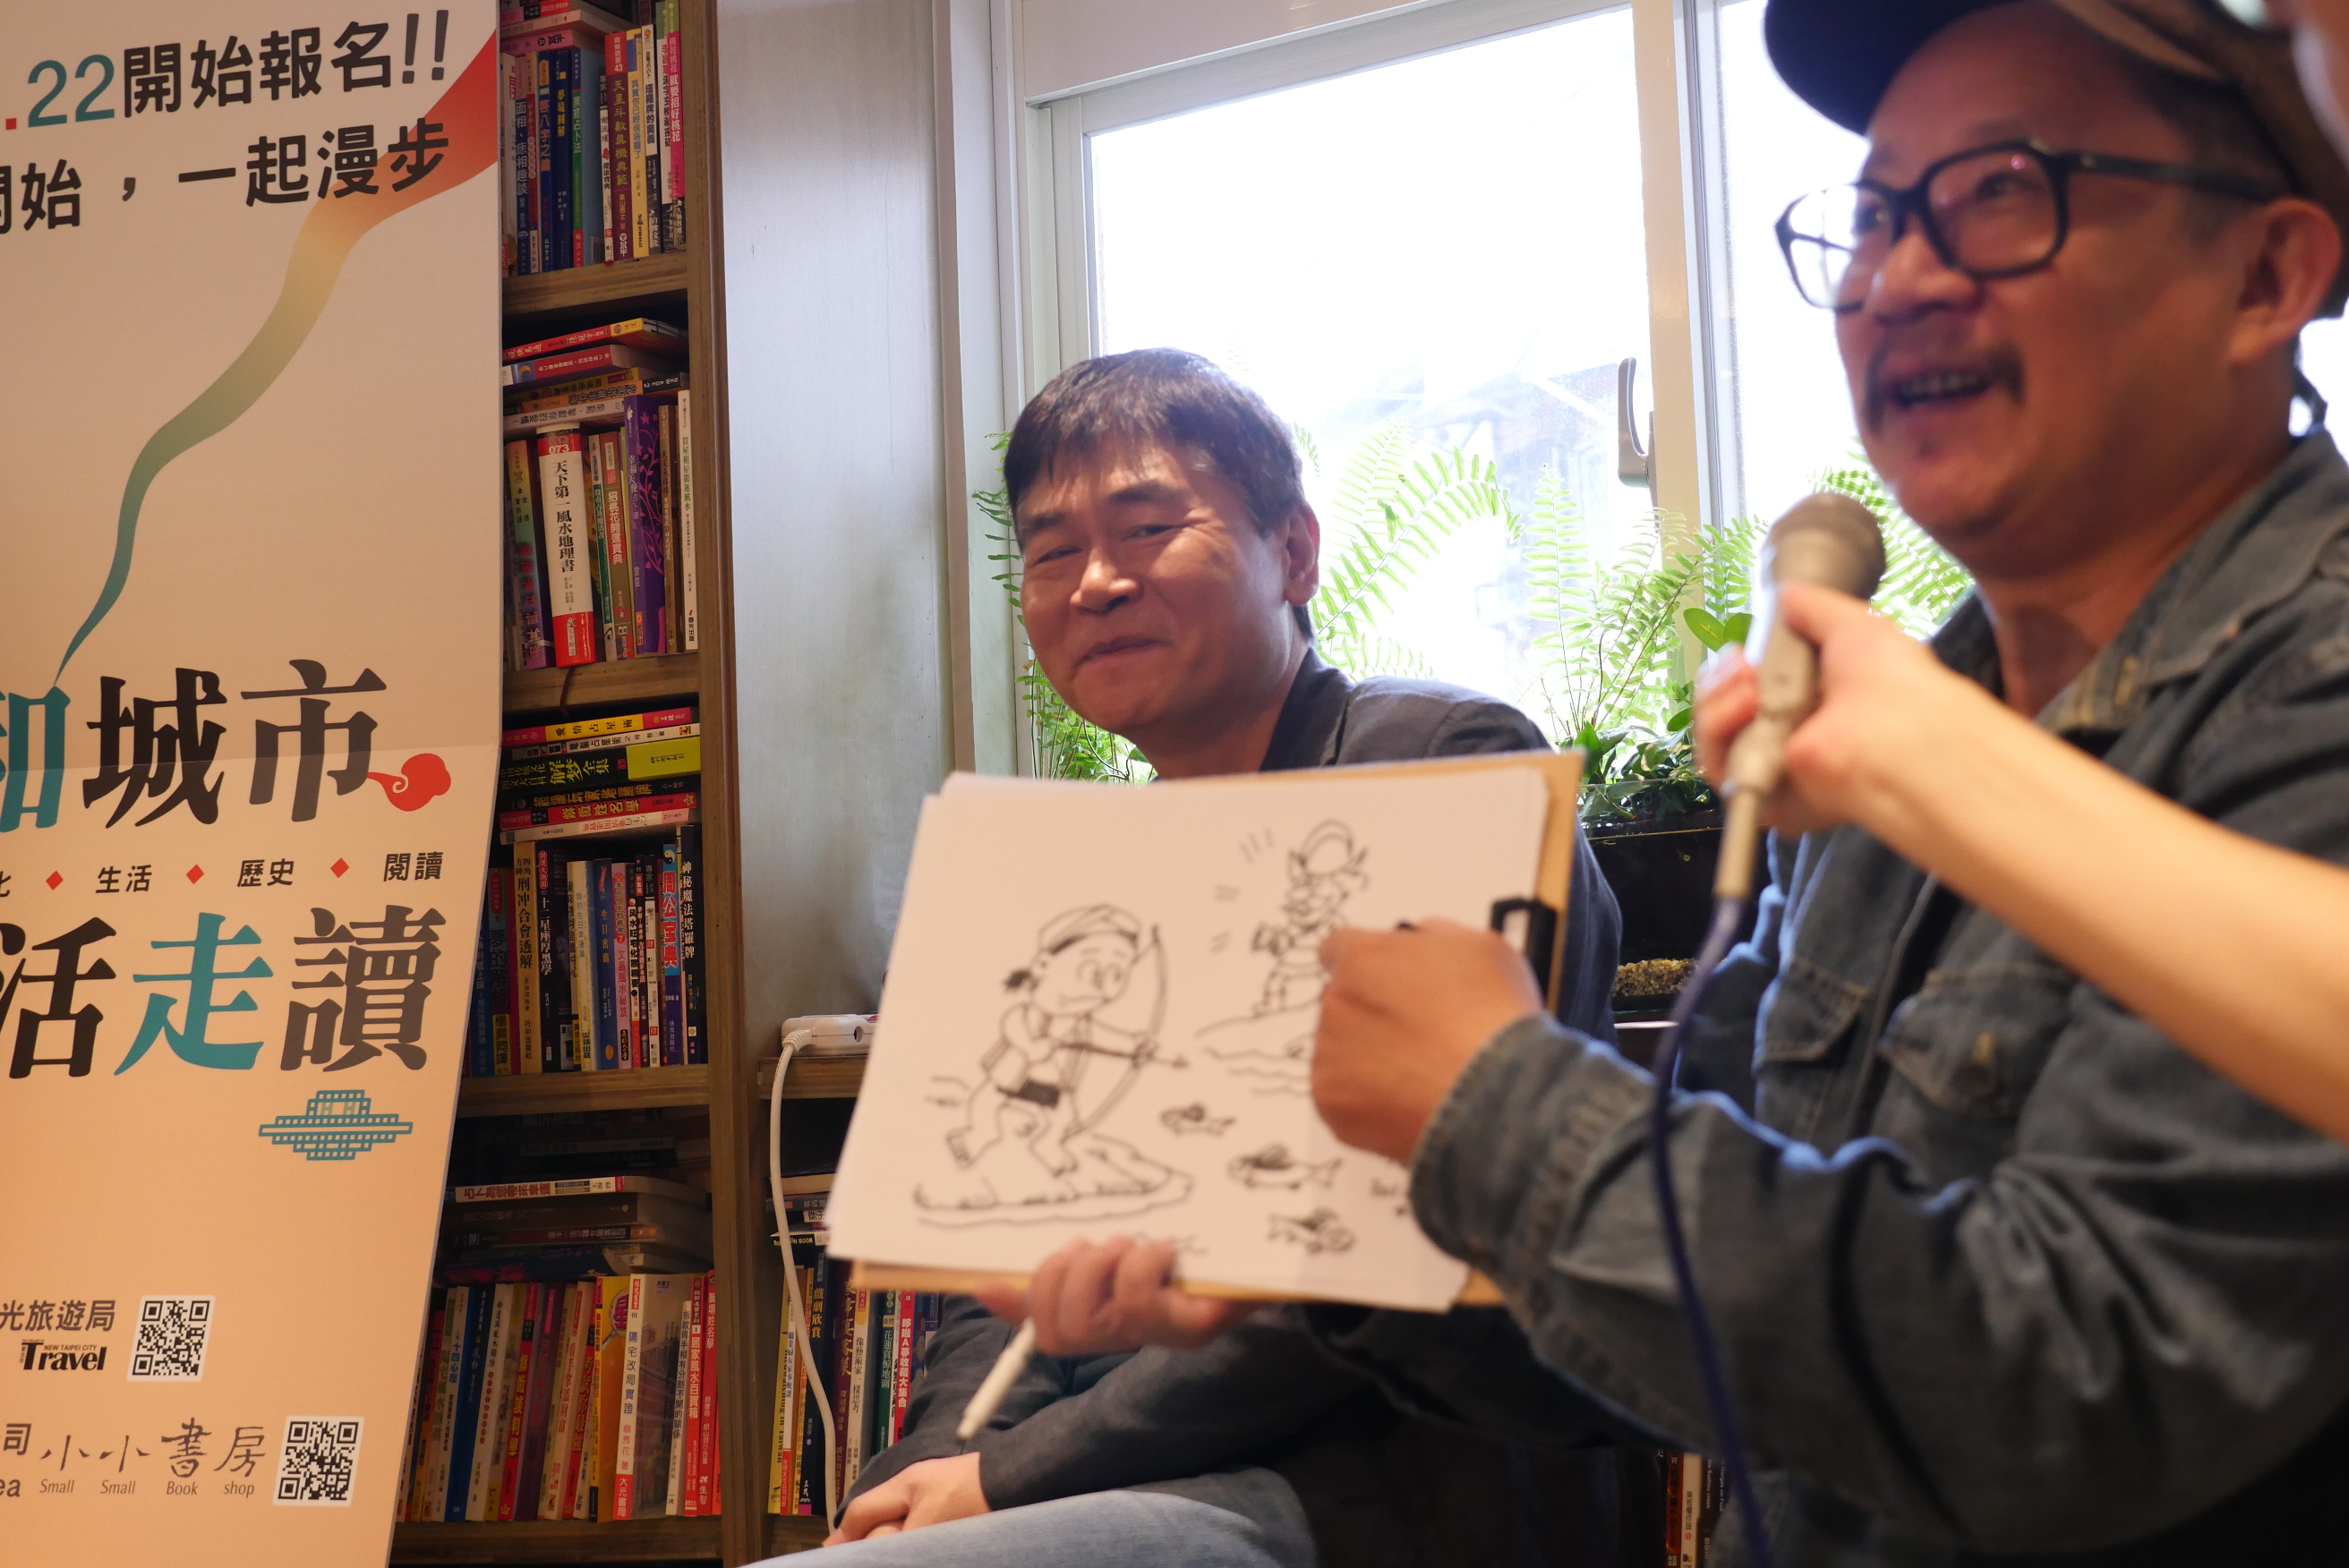 台灣漫畫家邱若龍現場即興現場即興畫出雙和秀朗社的歷史起源.JPG